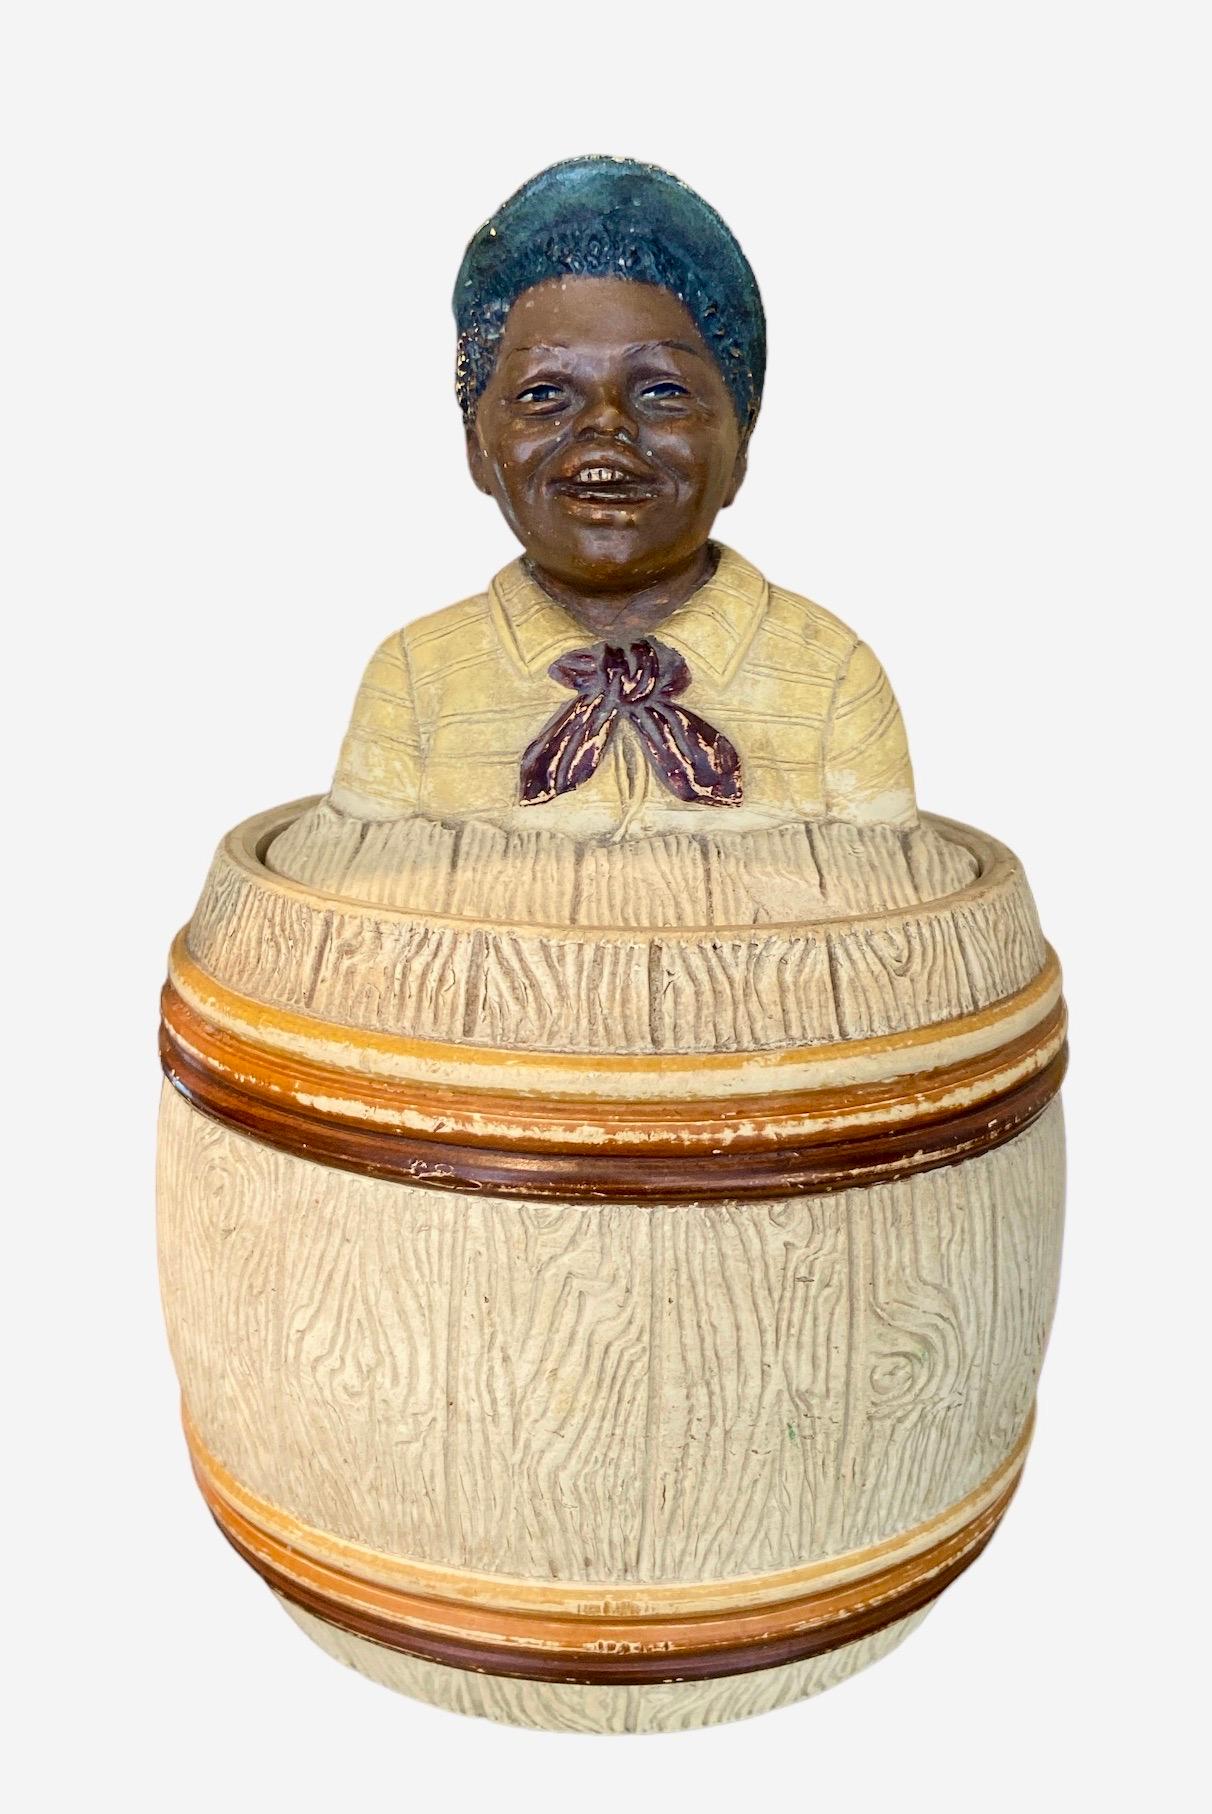 Le pot à tabac se présente sous la forme d'un tonneau en bois surmonté d'un petit garçon souriant. Terre cuite peinte à la main. Hauteur : 18 cm. Diamètre : 12 cm.